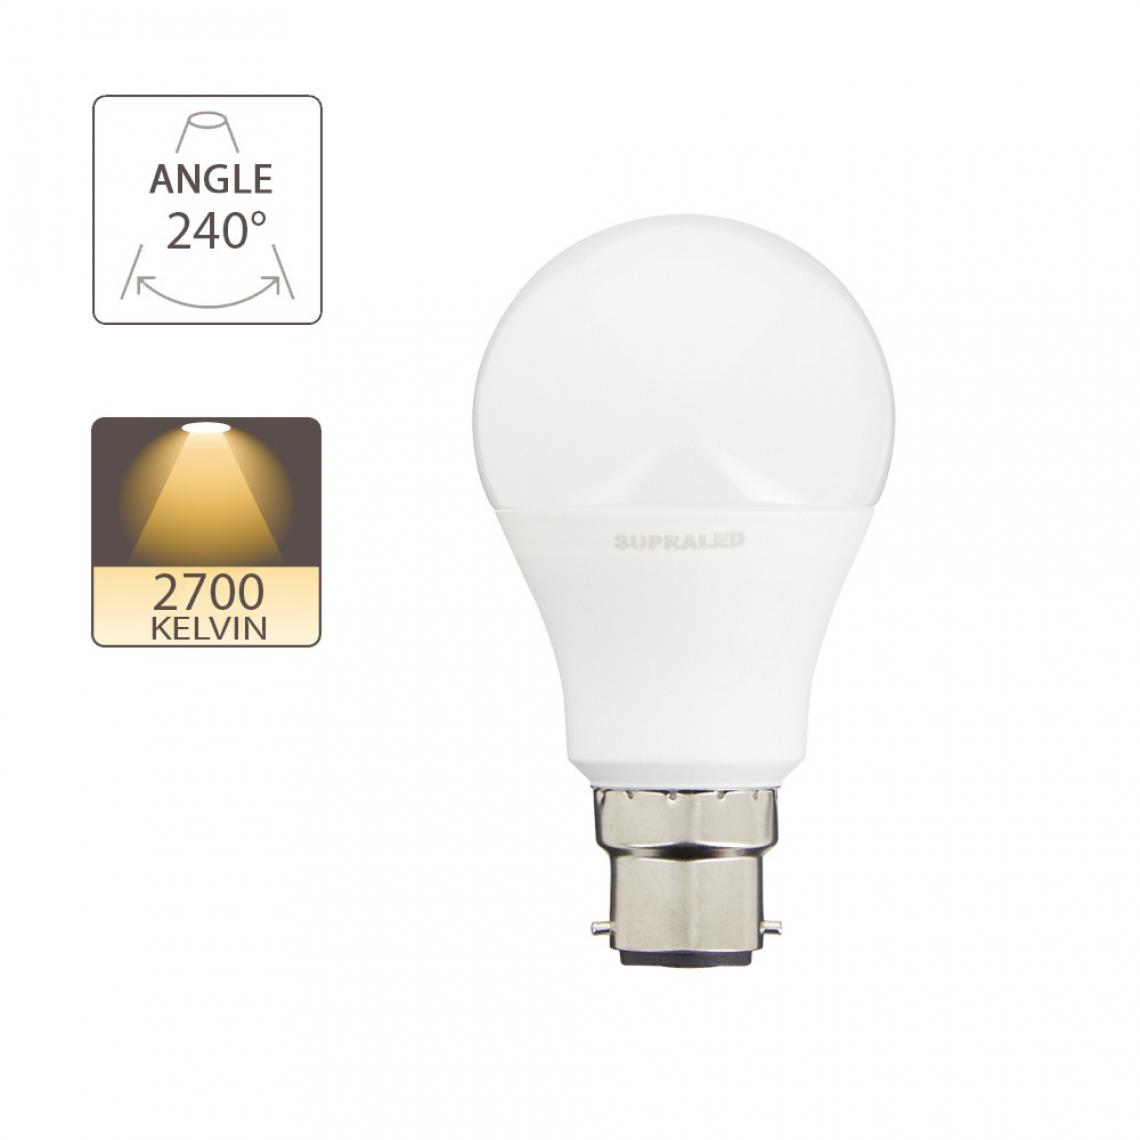 Supraled - Ampoule LED (A60) culot B22 - Ampoules LED